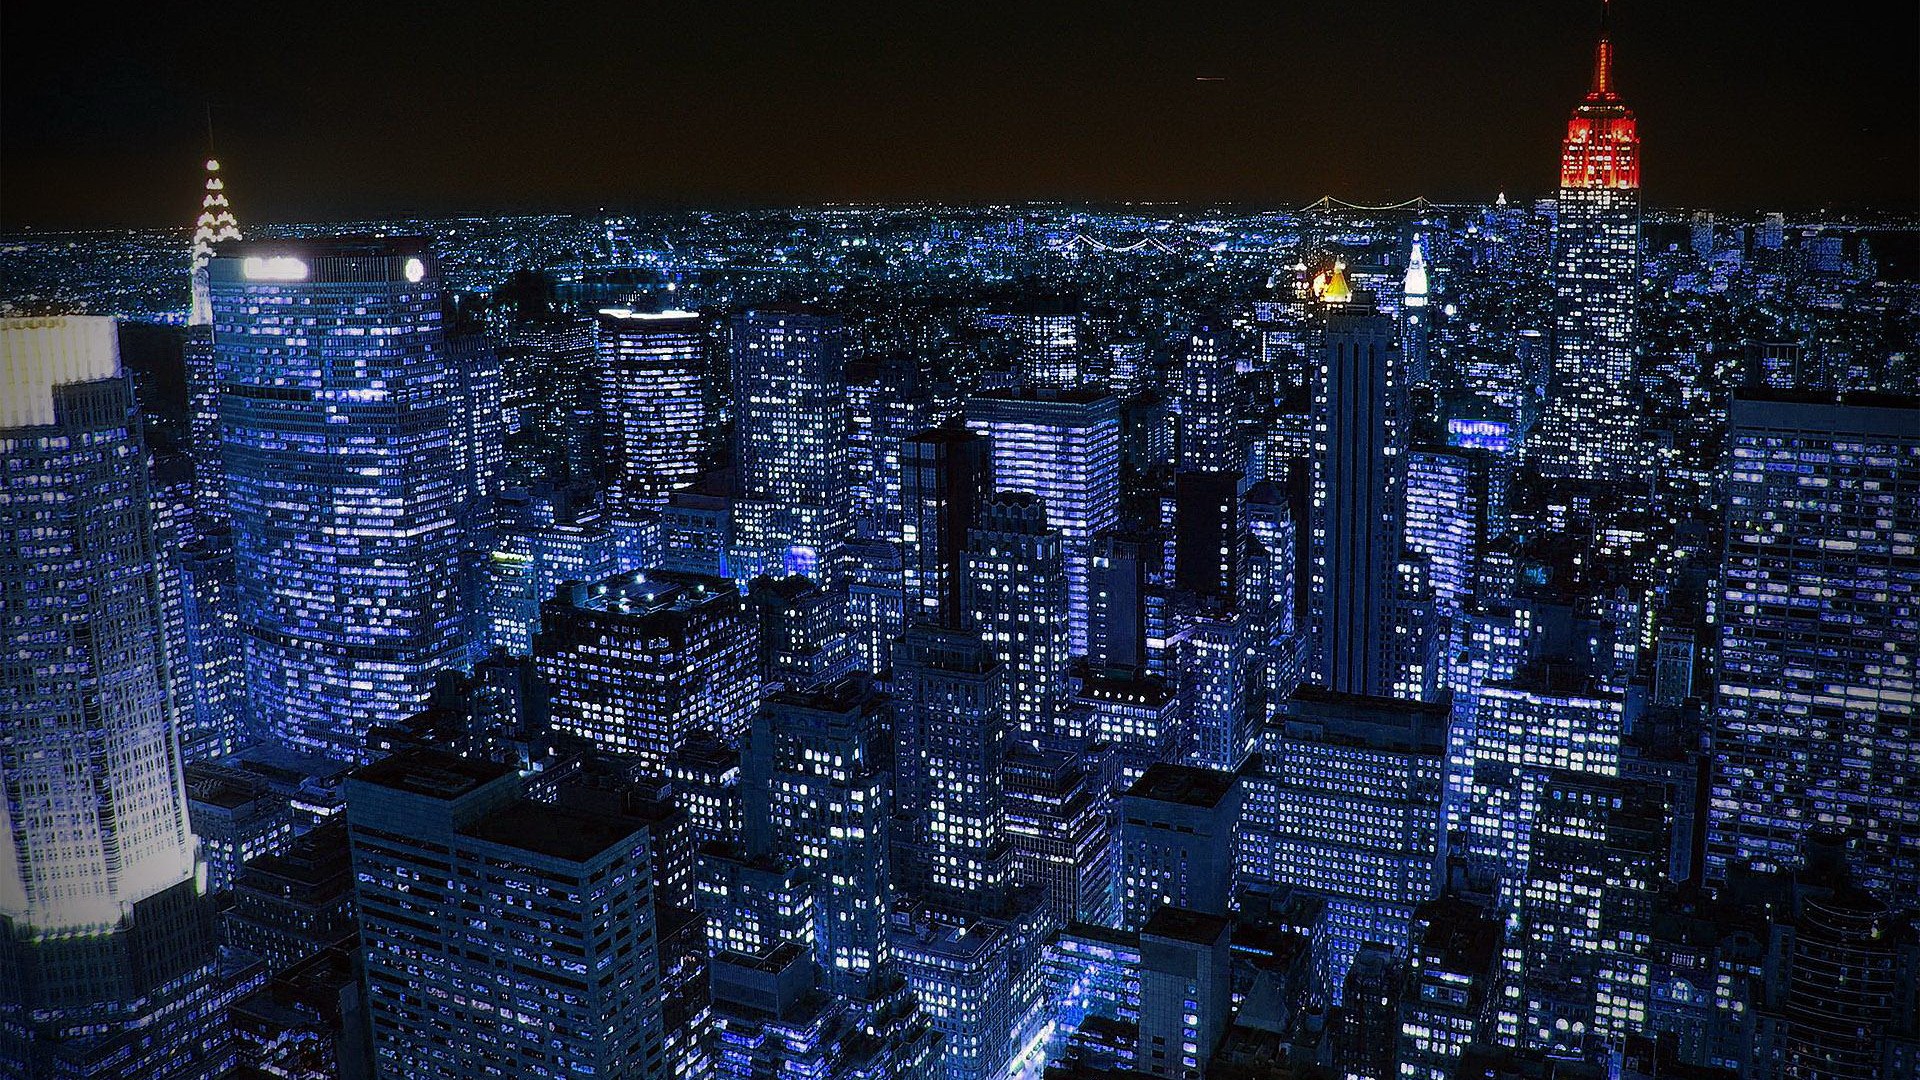 Một trải nghiệm khác biệt là đặt hình nền cao độ phân giải New York Skyline đêm trên thiết bị của bạn. Với ánh sáng lấp lánh của thành phố lớn và đường phố phồn hoa, hình nền này sẽ mang lại cho bạn một cảm giác thoải mái, thư giãn và yên bình.